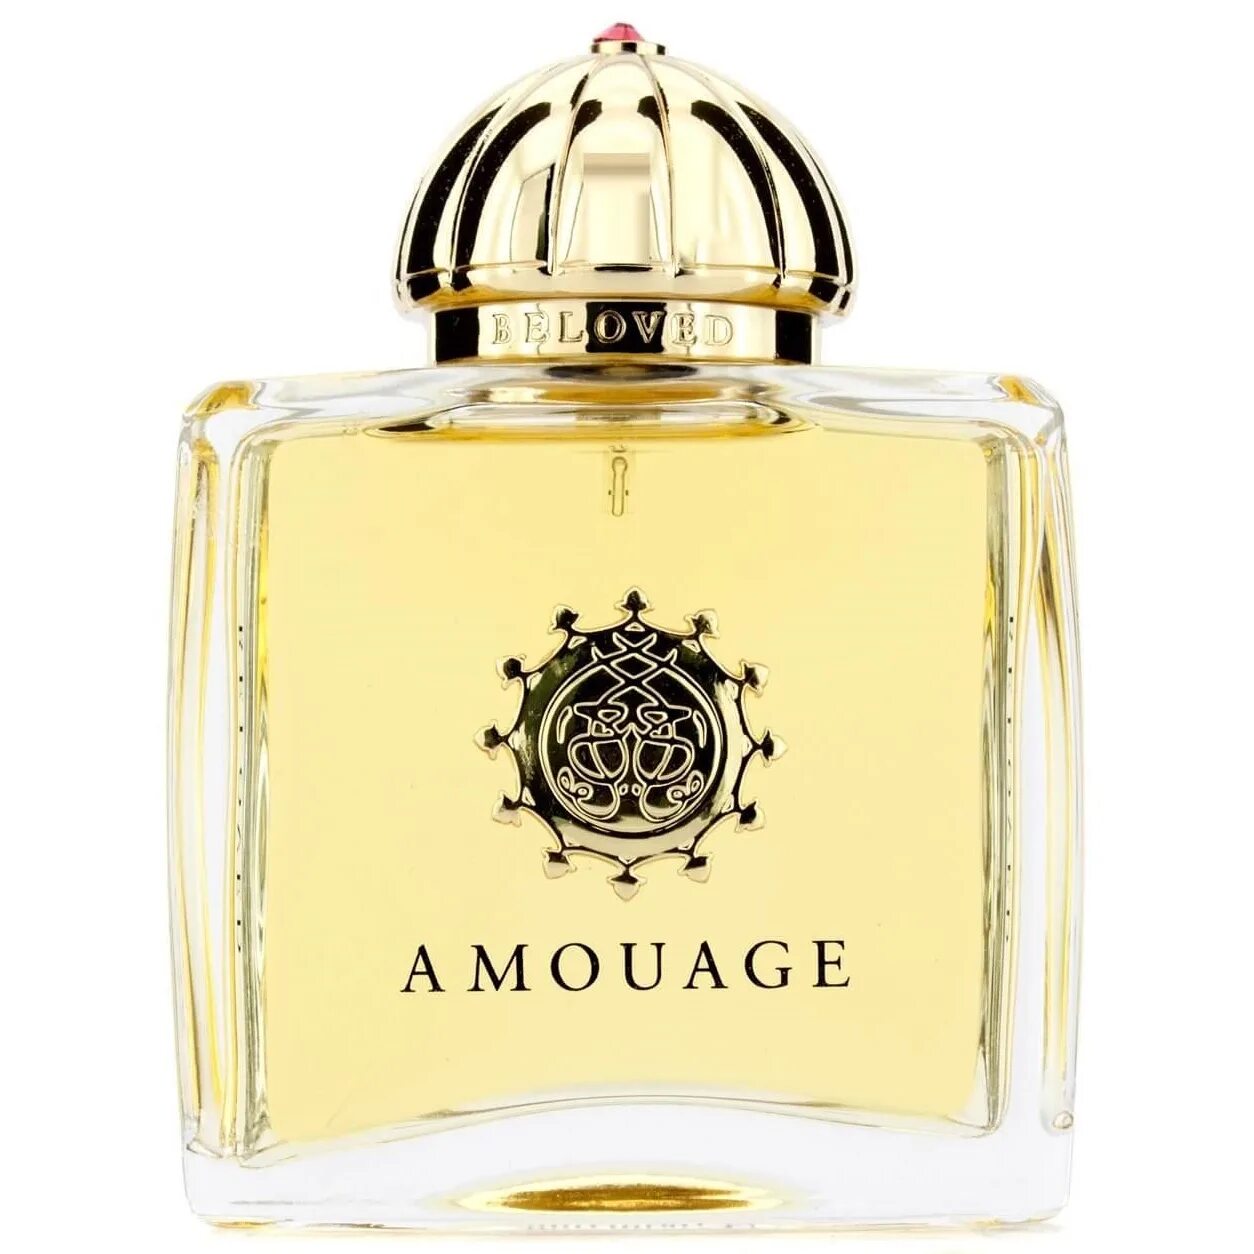 Amouage духи купить. Amouage 50 ml. Amouage Perfume. Beloved Парфюм Амуаж. Amouage 50 мл.